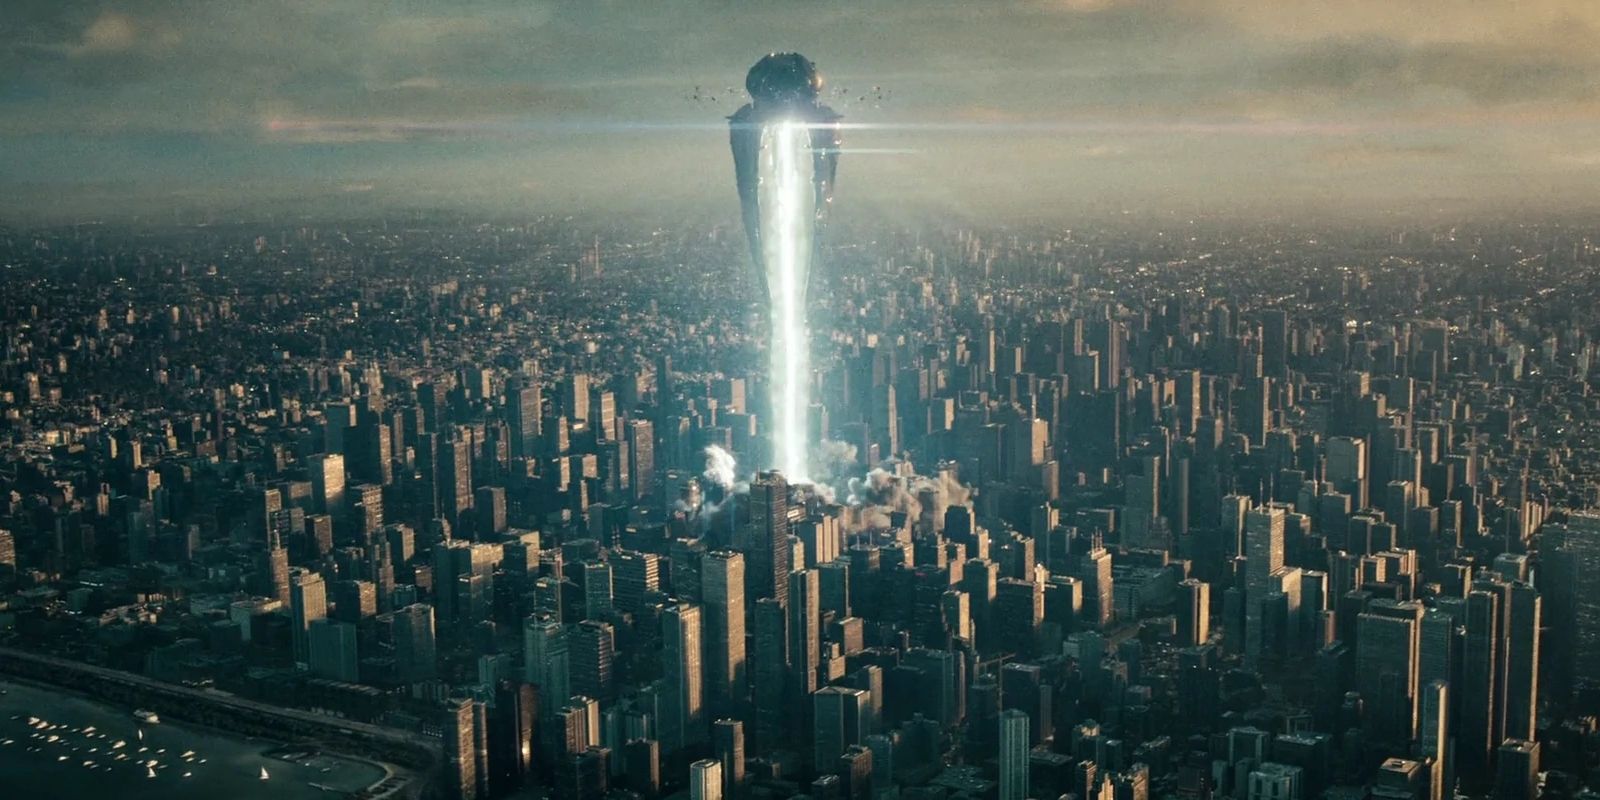 General Zod's soldiers attack Metropolis in Man of Steel